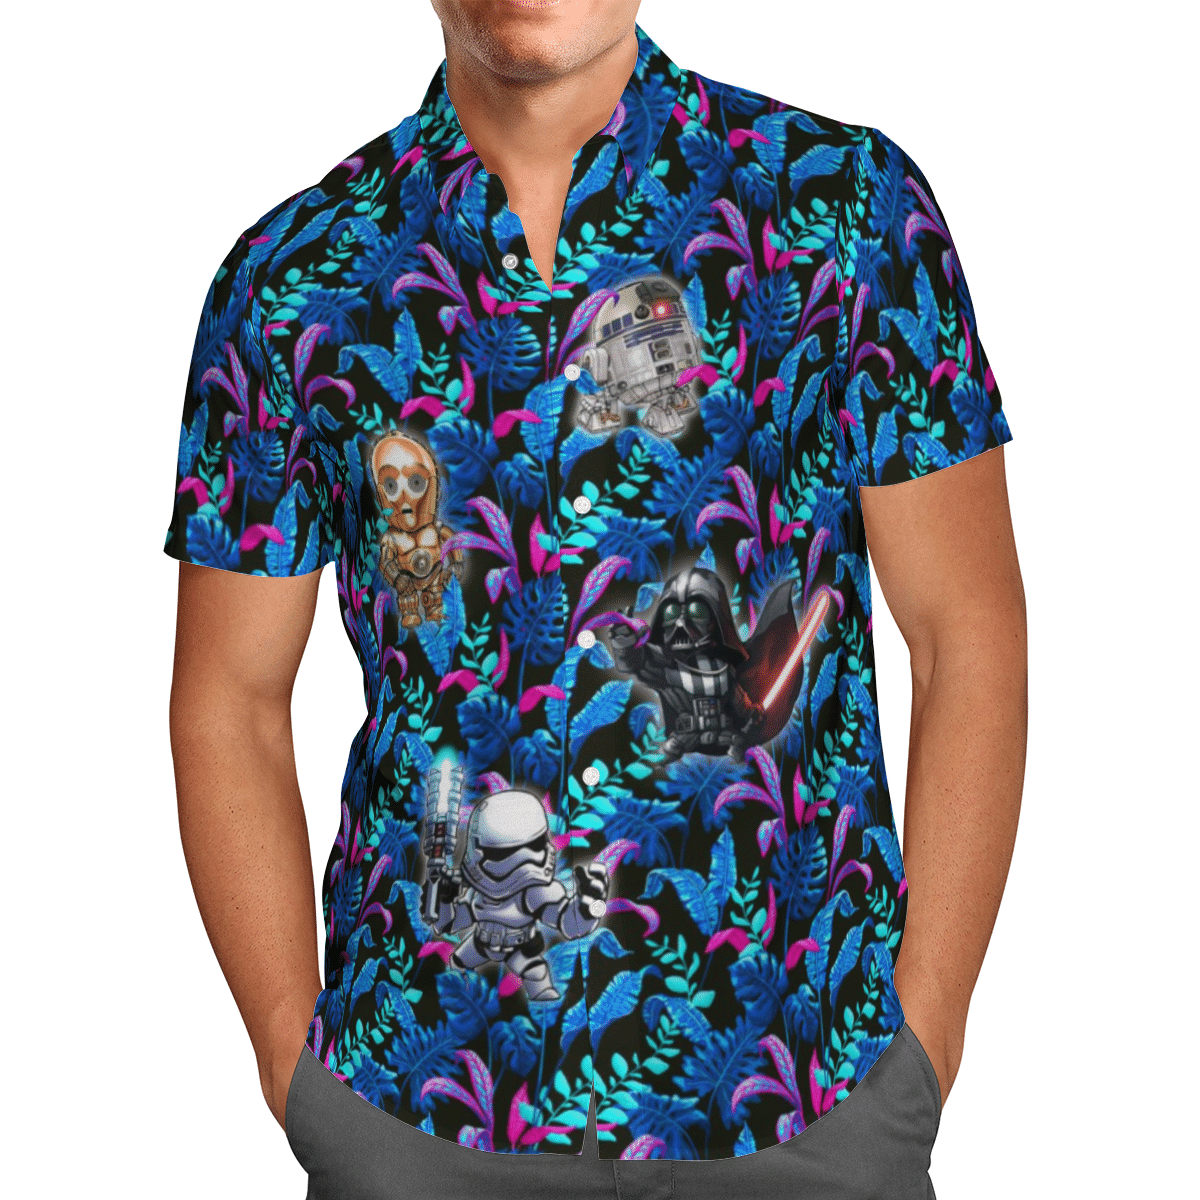 Star wars Hawaiian shirt – LIMITED EDITION